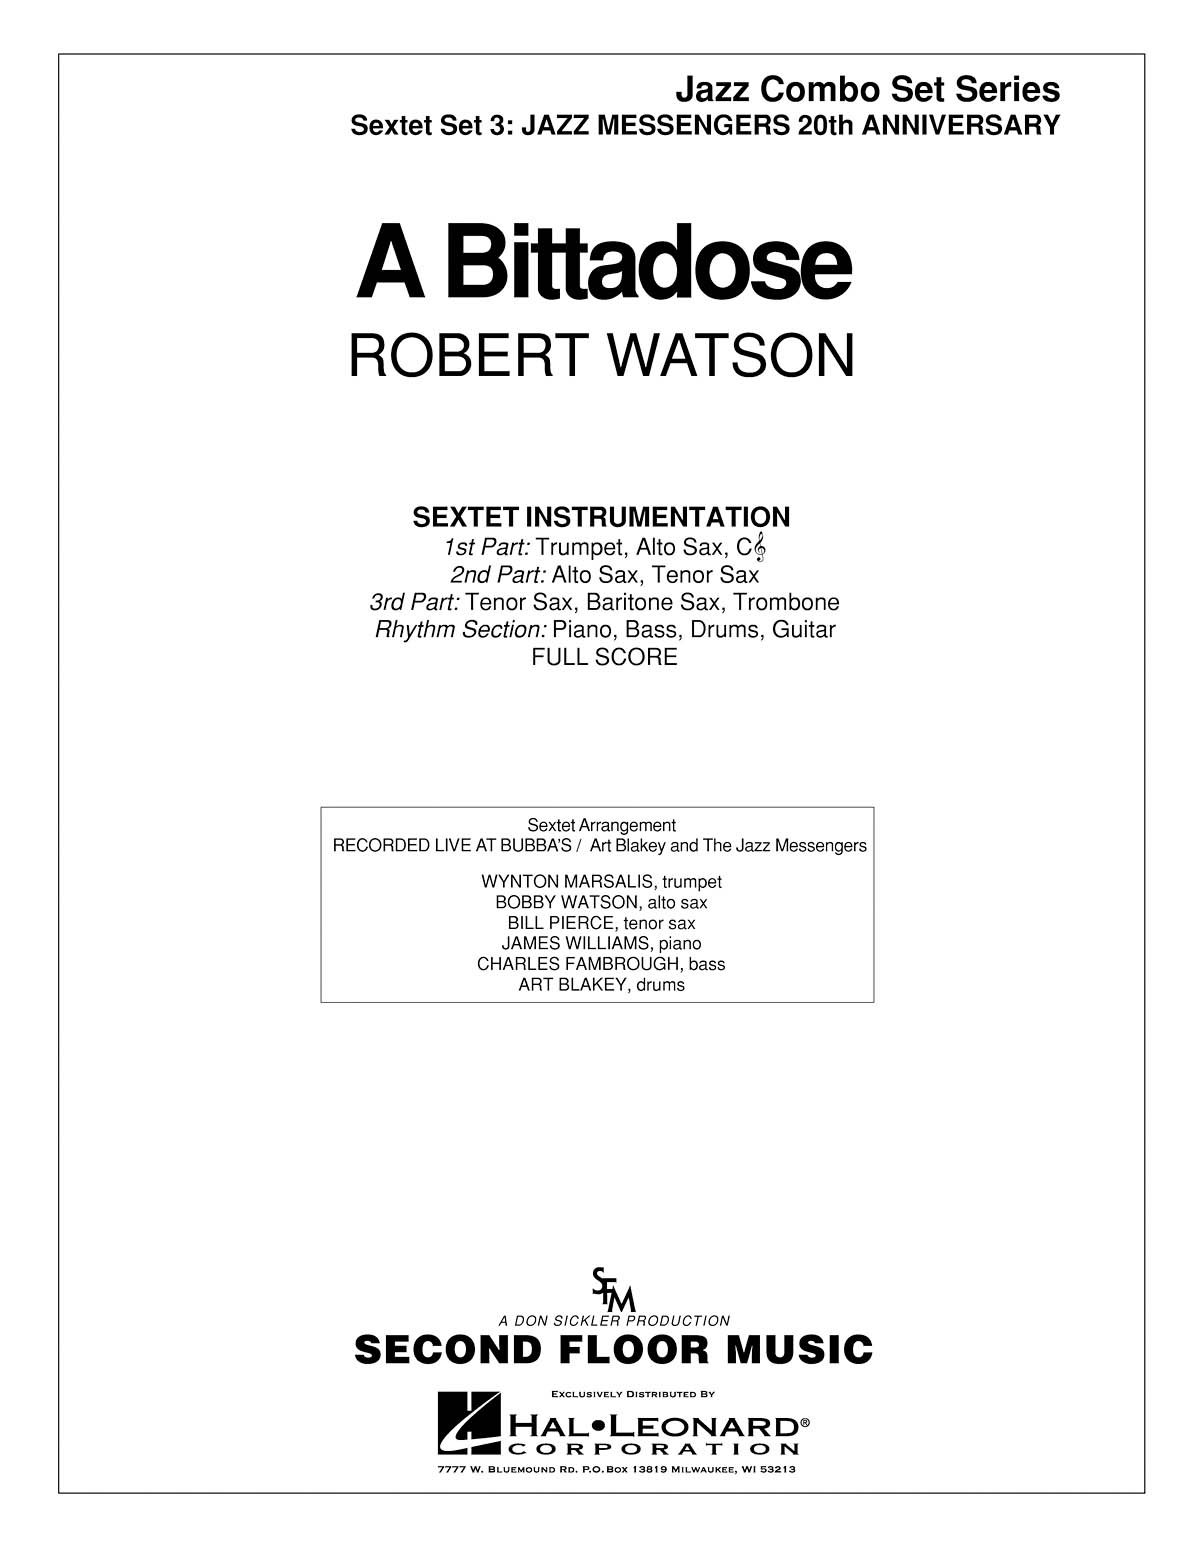 Robert Watson: A Bittadose: Jazz Ensemble: Score